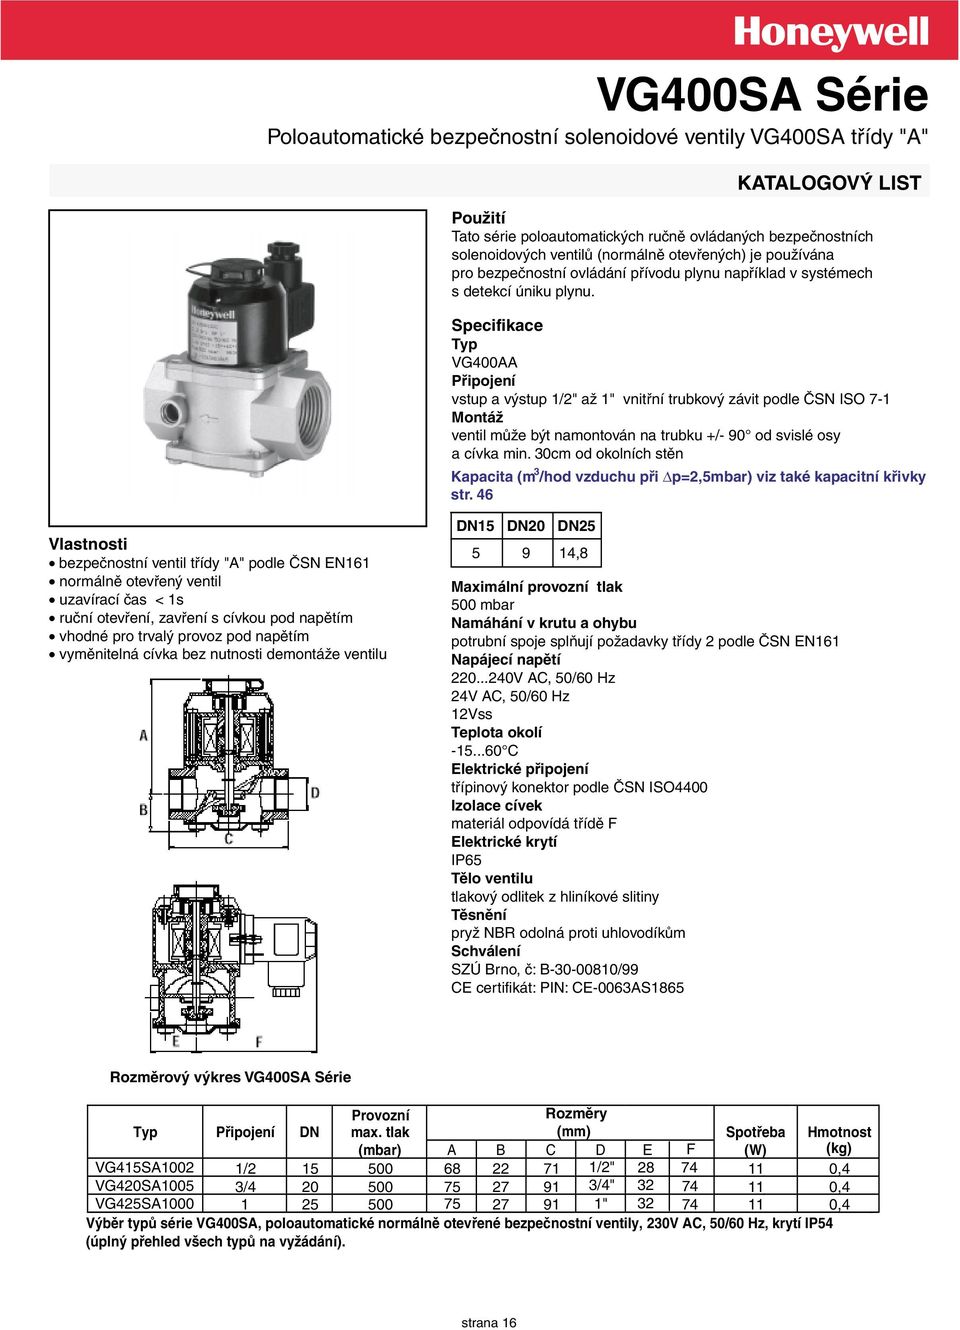 Specifikace Typ VG400AA Připojení vstup a výstup 1/2" až 1" vnitřní trubkový závit podle ČSN ISO 7-1 Montáž ventil může být namontován na trubku +/- 90 od svislé osy a cívka min.